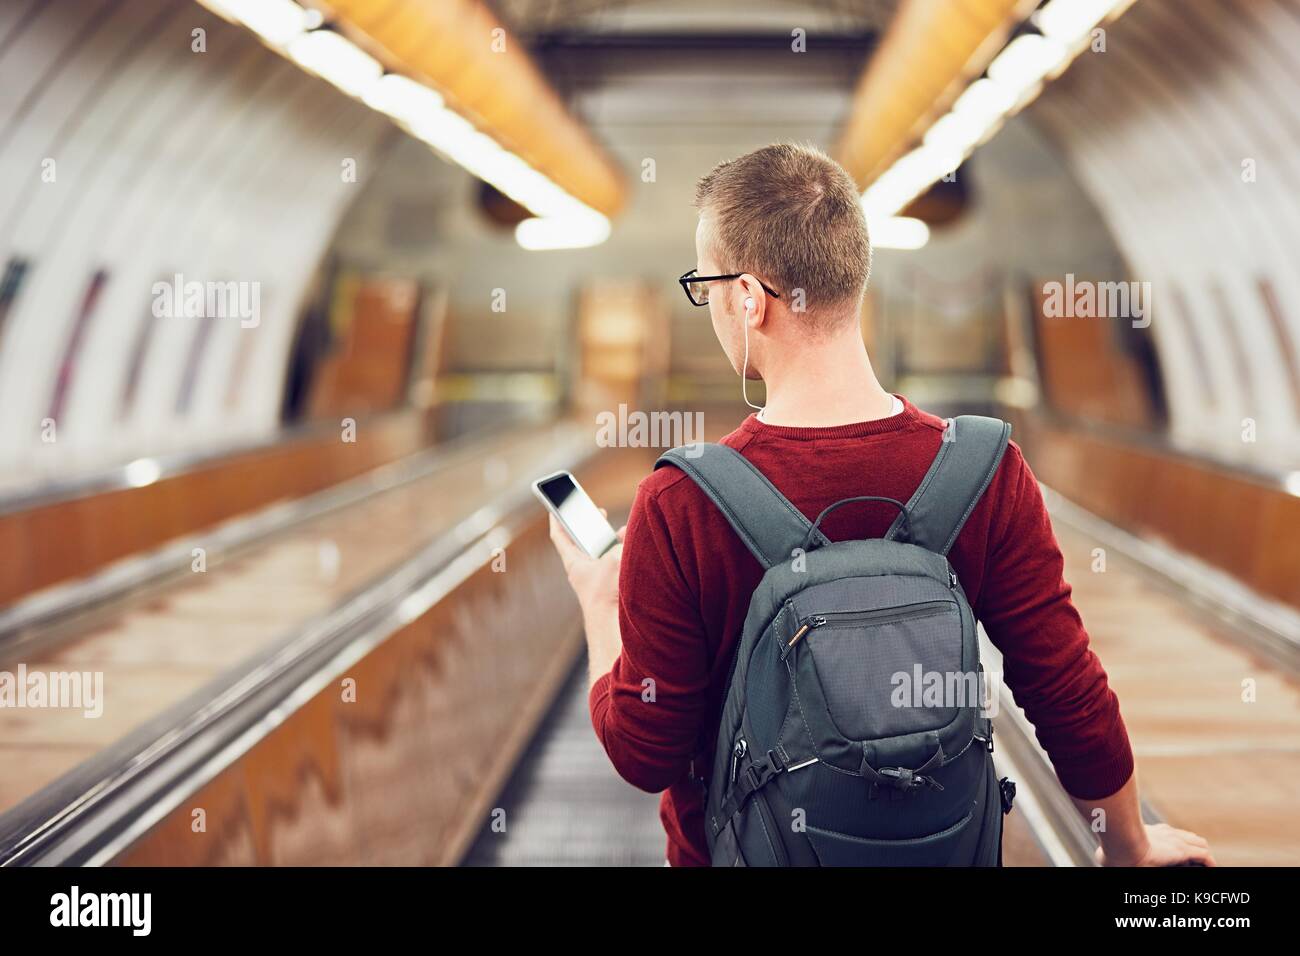 Anreise mit öffentlichen Verkehrsmitteln. Junger Mann Musik hören über Kopfhörer auf der Rolltreppe zur U-Bahn. Stockfoto